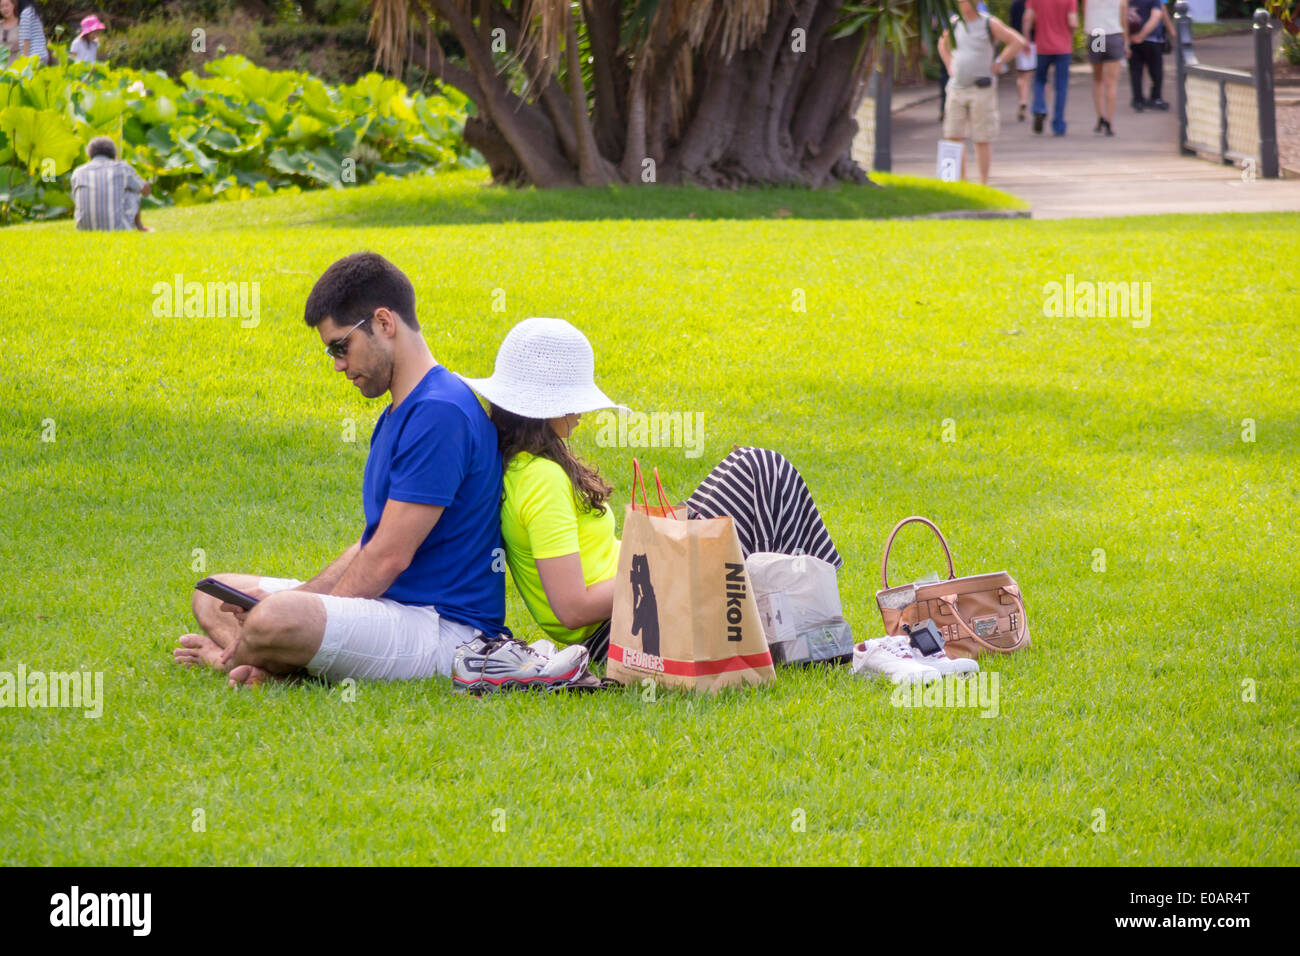 Sydney Australie,Royal Botanic Gardens,homme hommes,femme femmes,couple,dos à dos,pelouse,assis,en,utilisant,tablette,parc,AU140309172 Banque D'Images